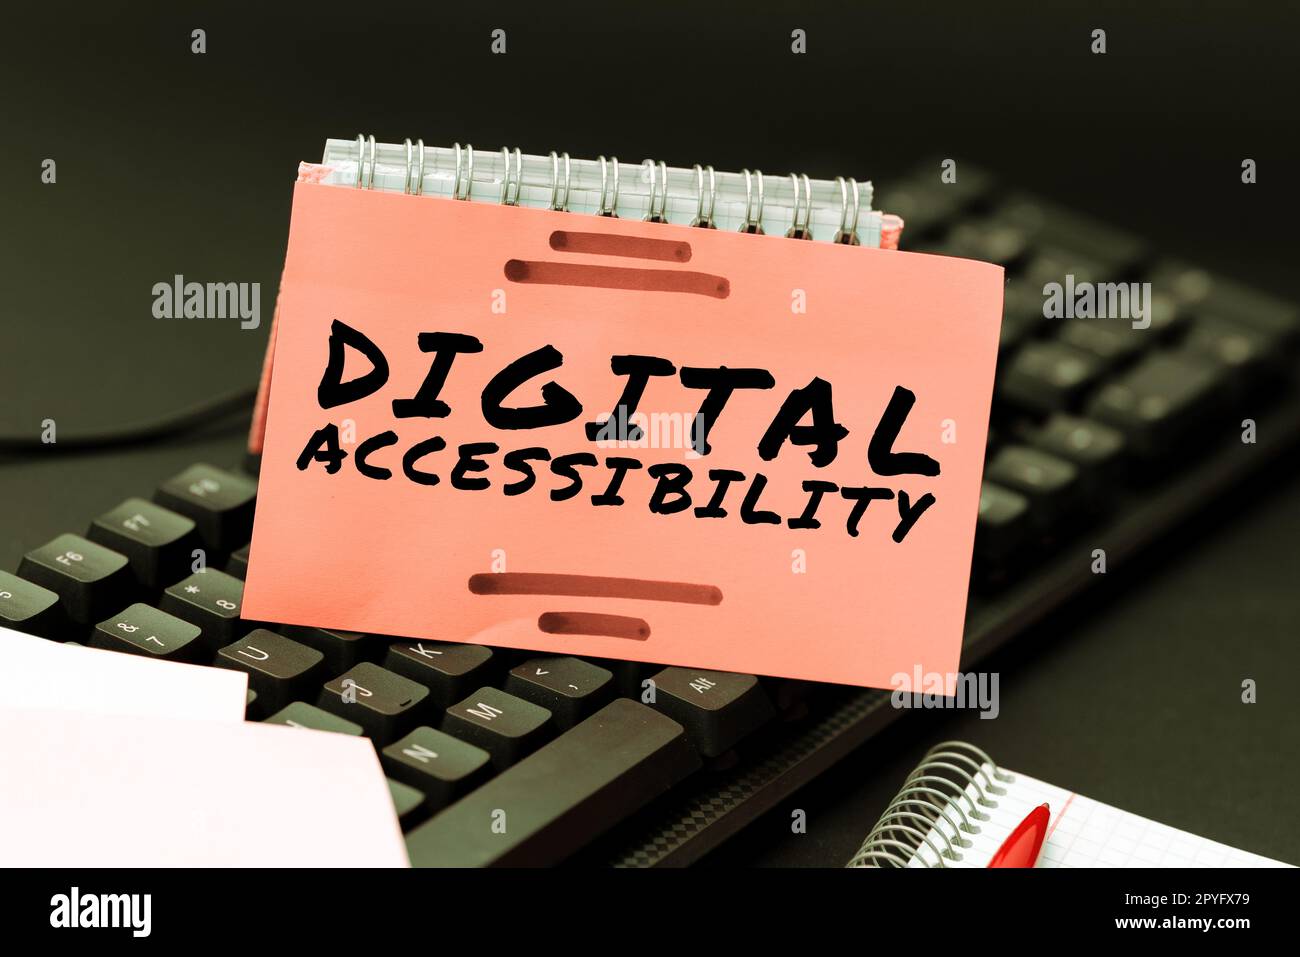 Légende conceptuelle Accessibilité numérique. Technologie électronique photographique conceptuelle qui génère des magasins et traite des données Banque D'Images